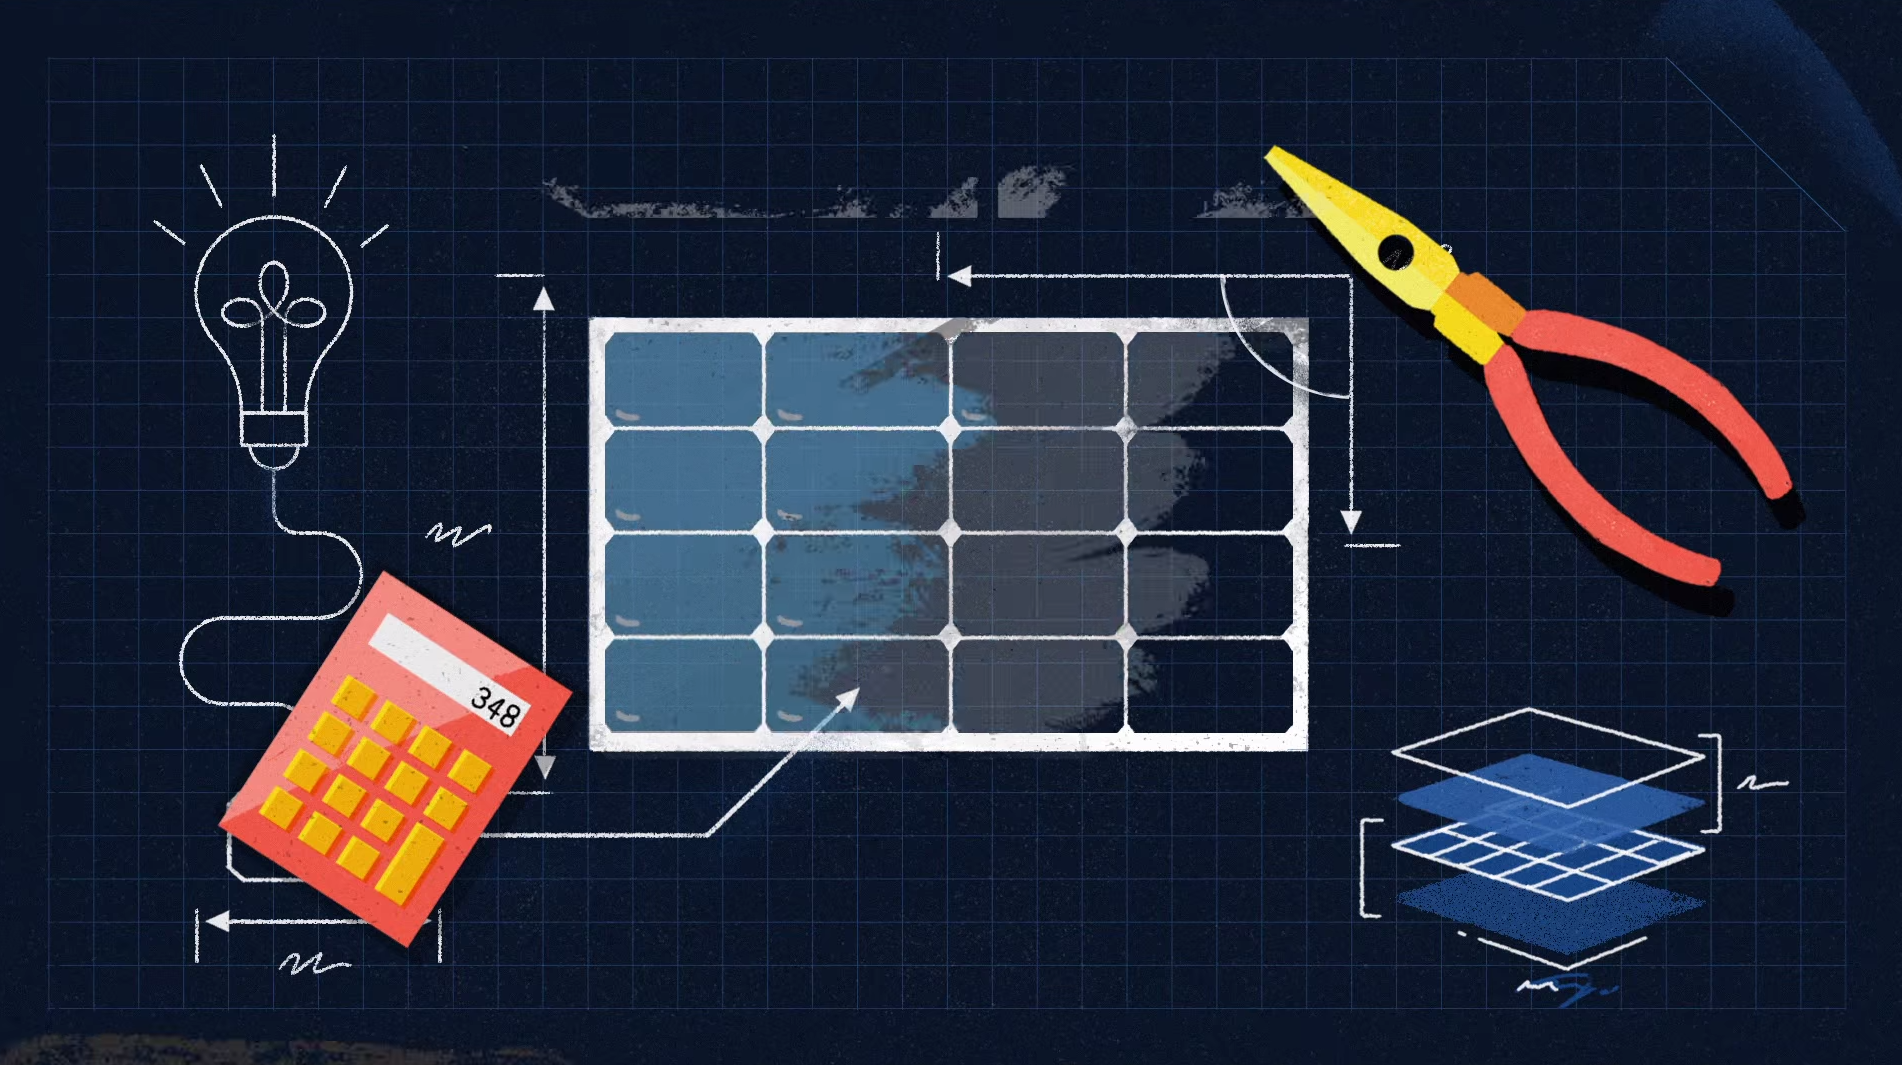 Quanto você economizará instalando um painel solar? O Google quer te ajudar a descobrir